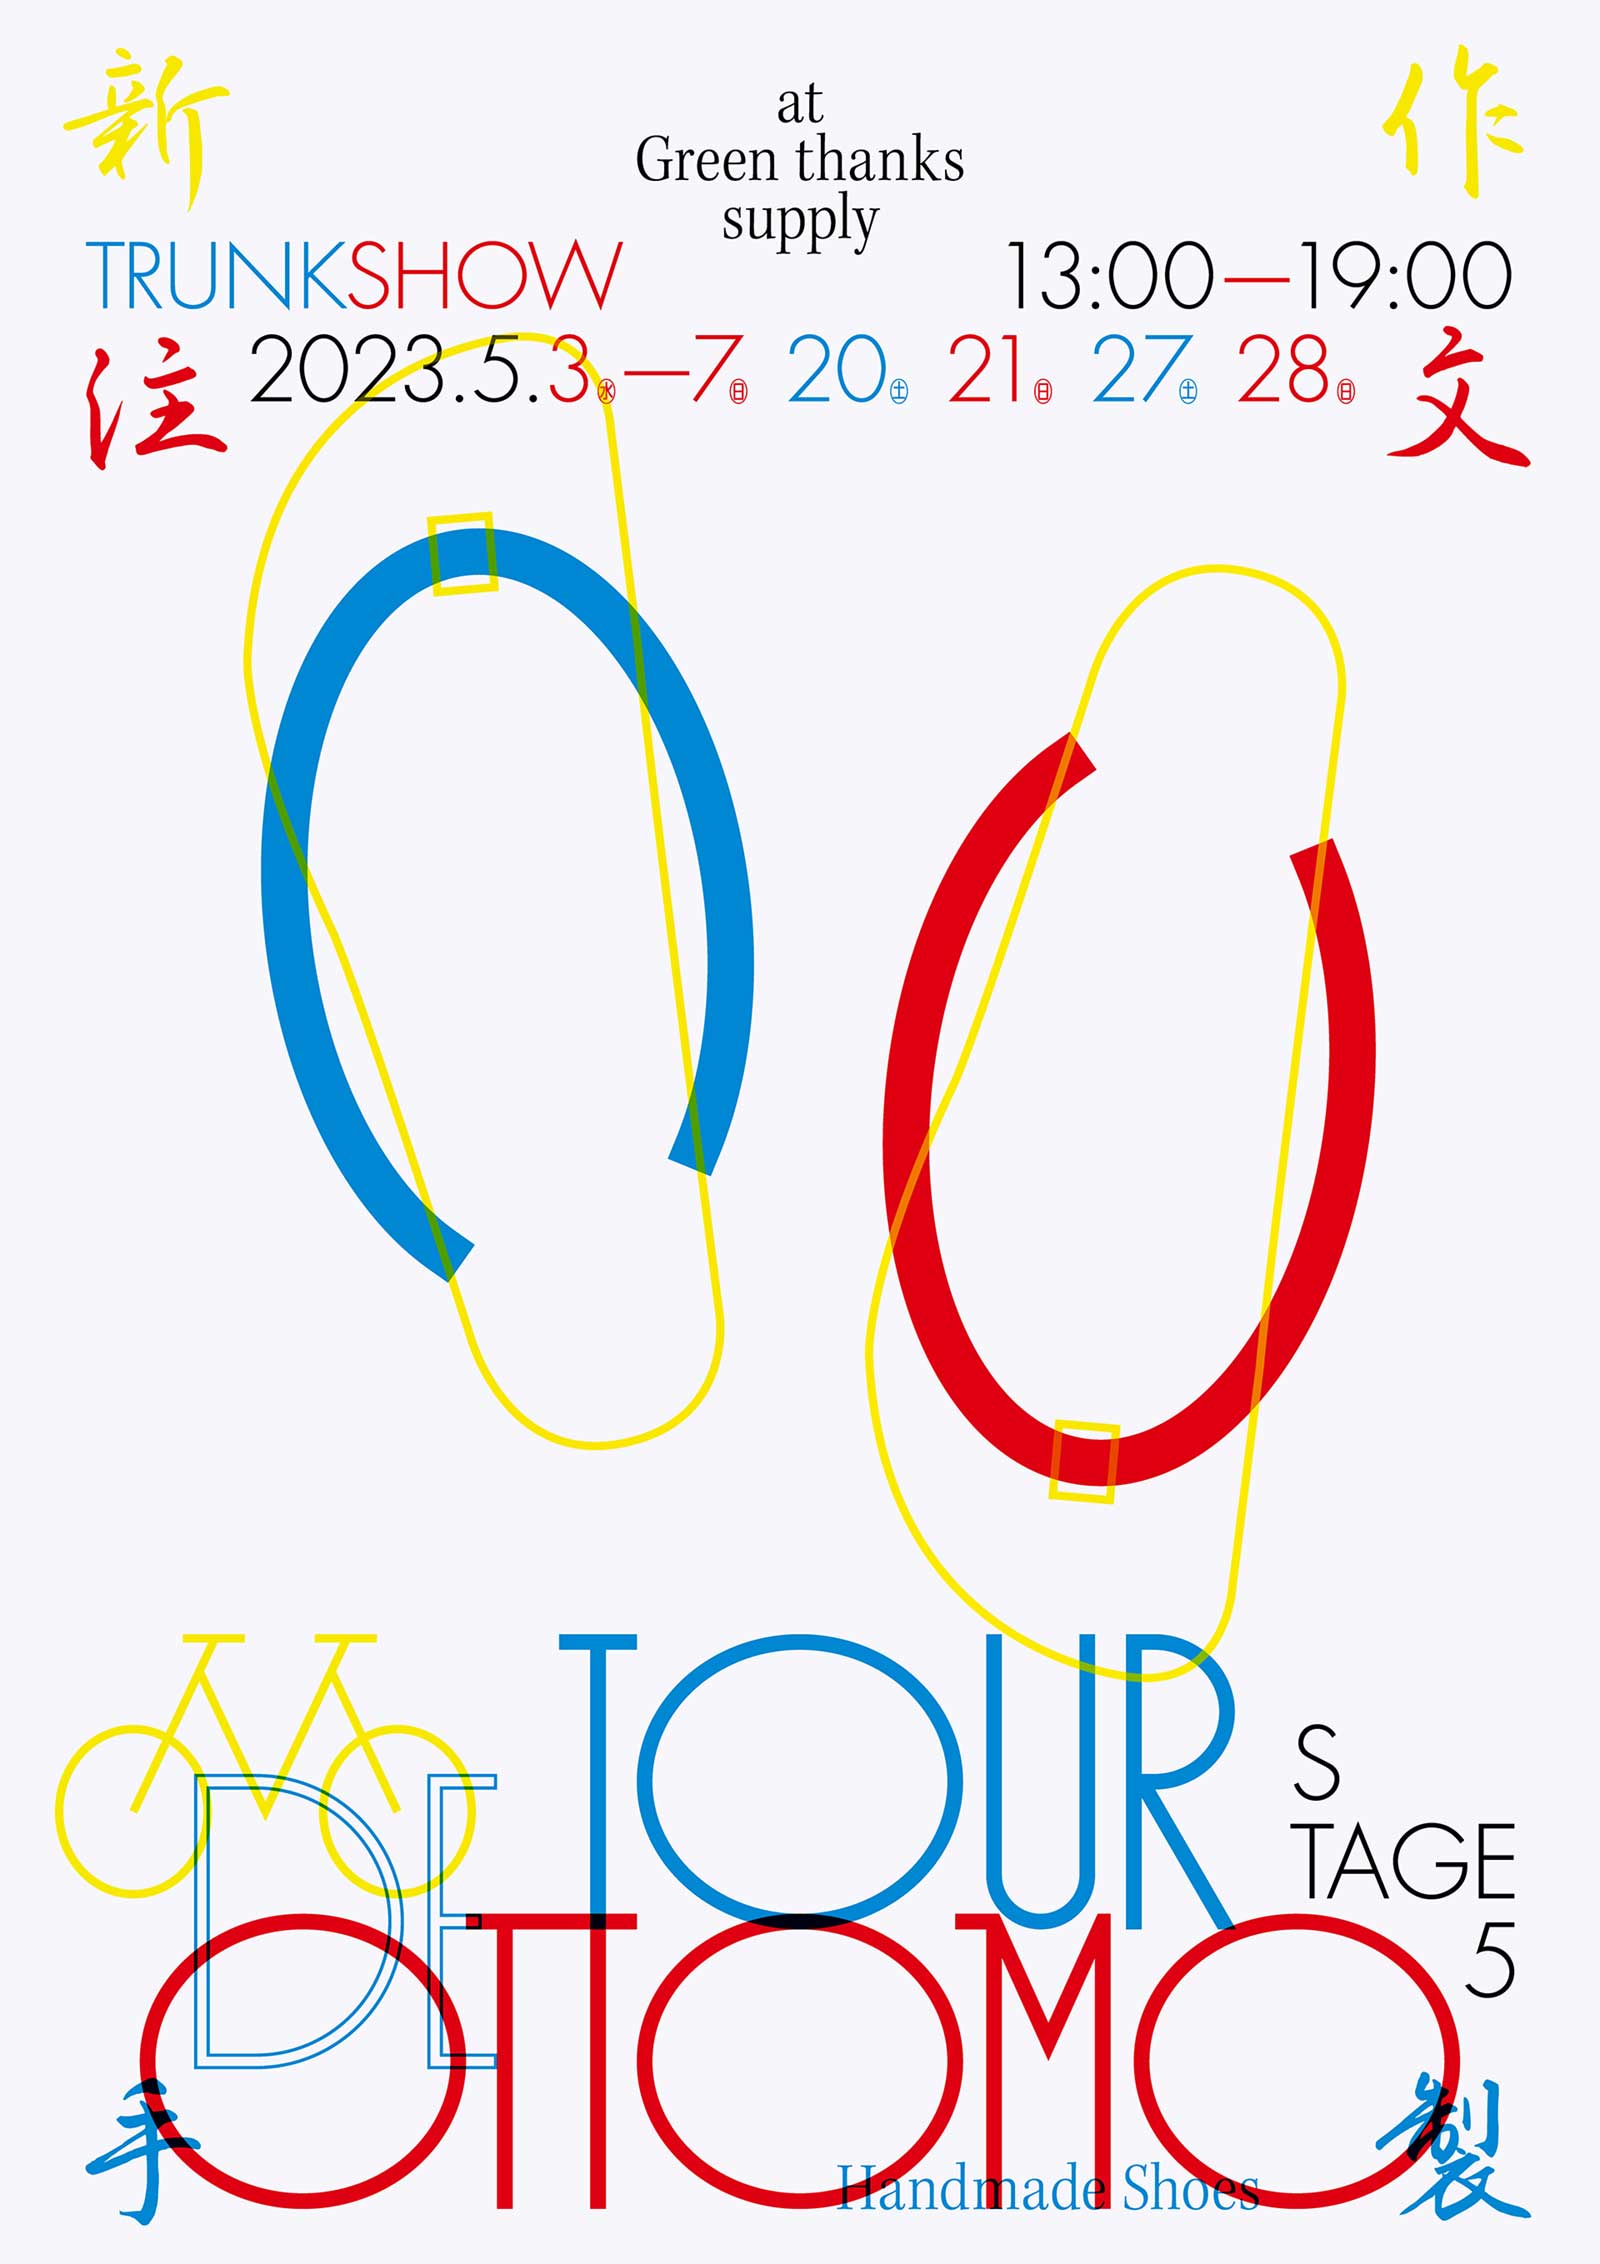 TOUR DE OTTOMO TRUNK SHOW STAGE5